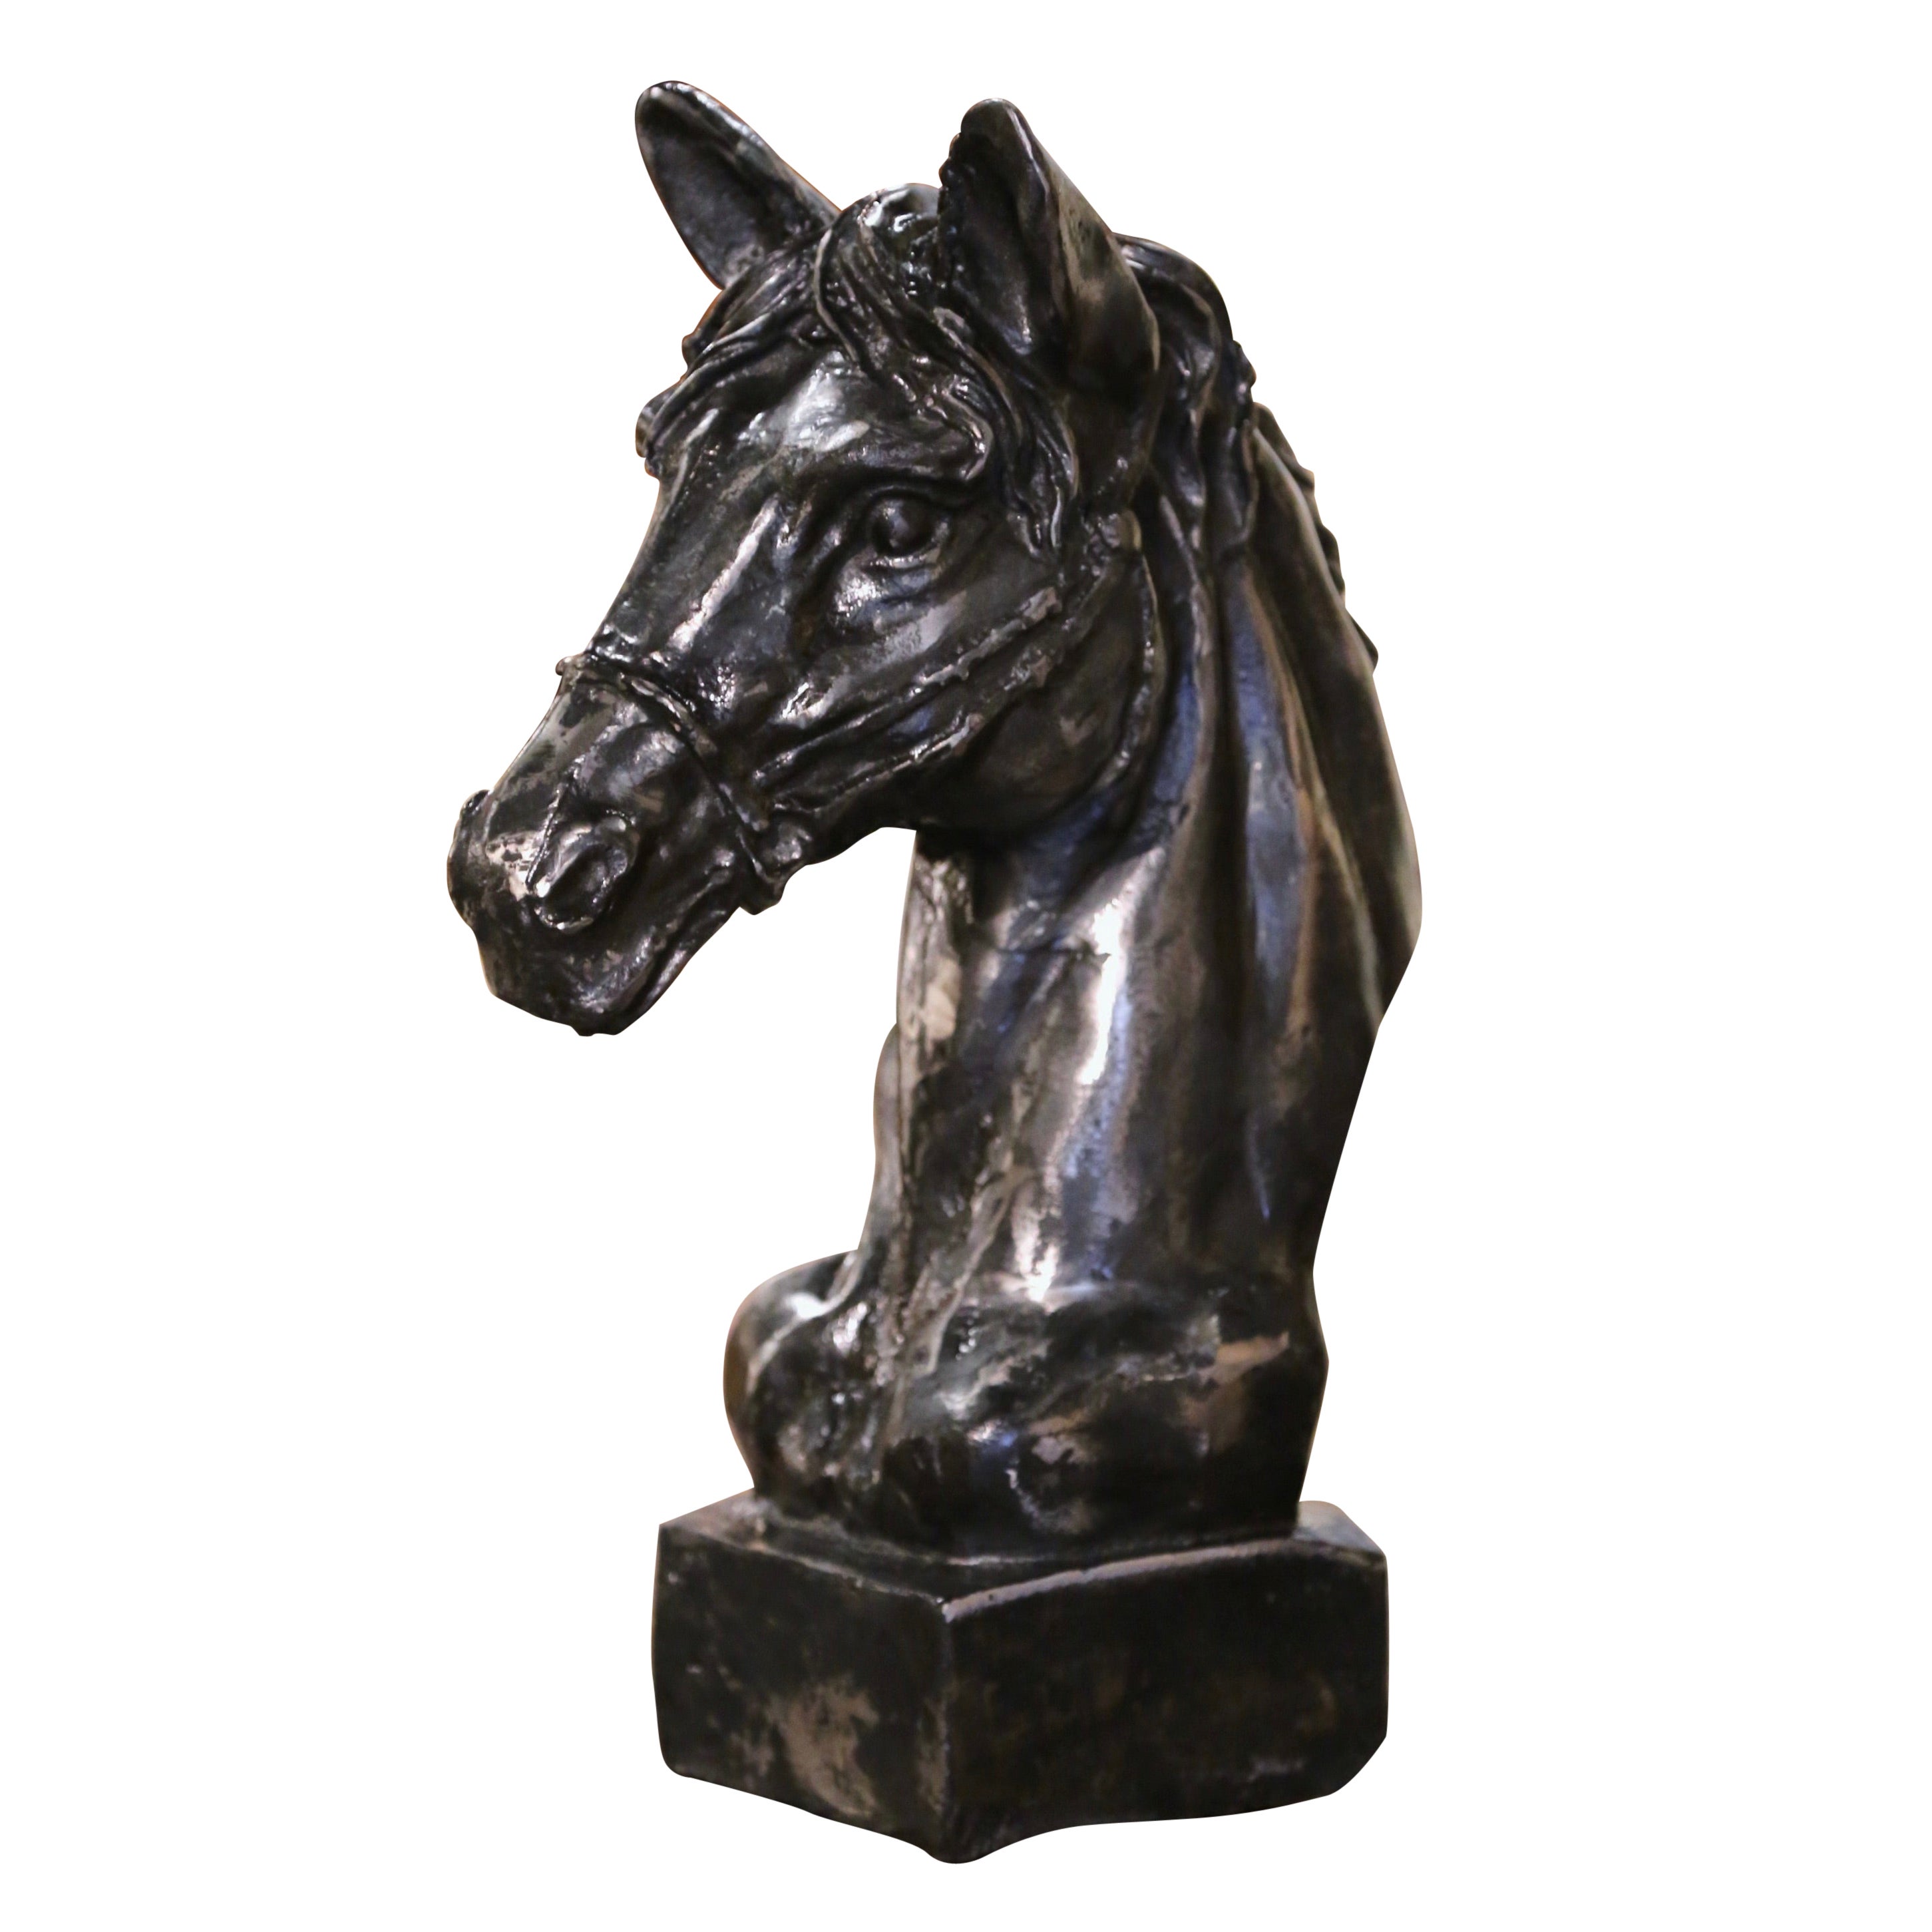 Sculpture française du début du 20e siècle en fer poli représentant une tête de cheval sur socle intégral